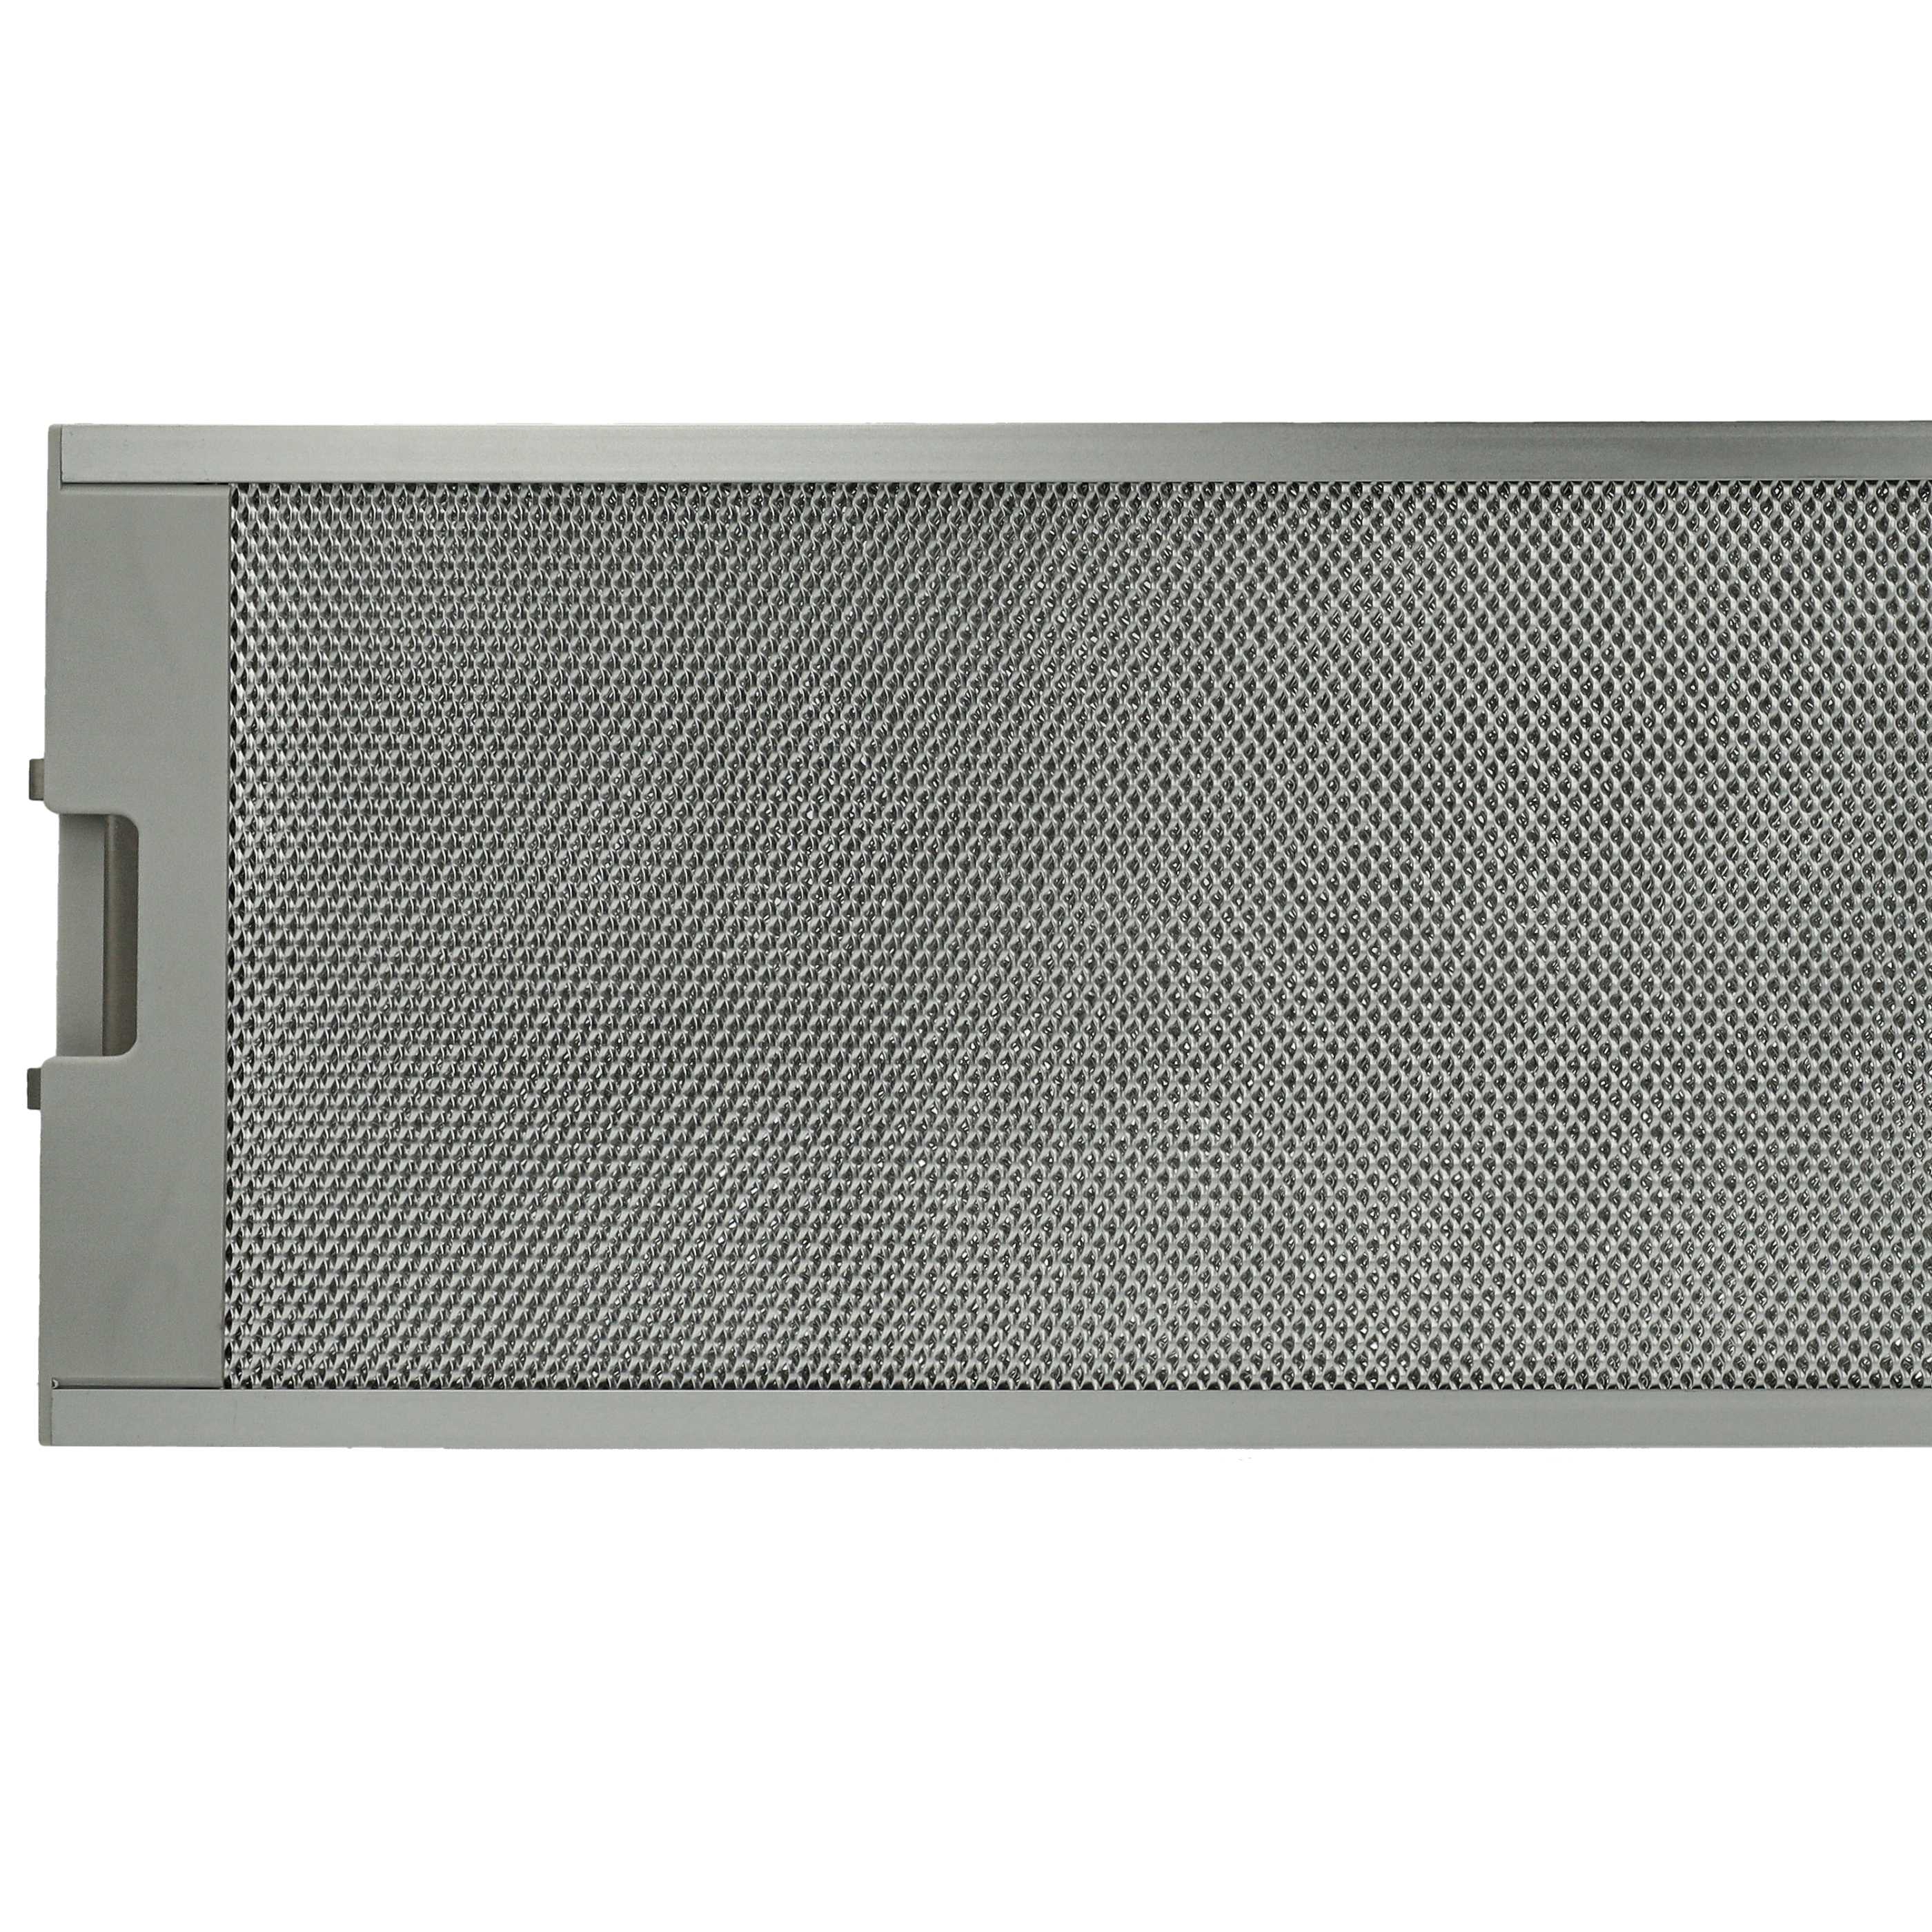 Dunstabzugshaube Metallfettfilter als Ersatz für Europart 804080 u.a.